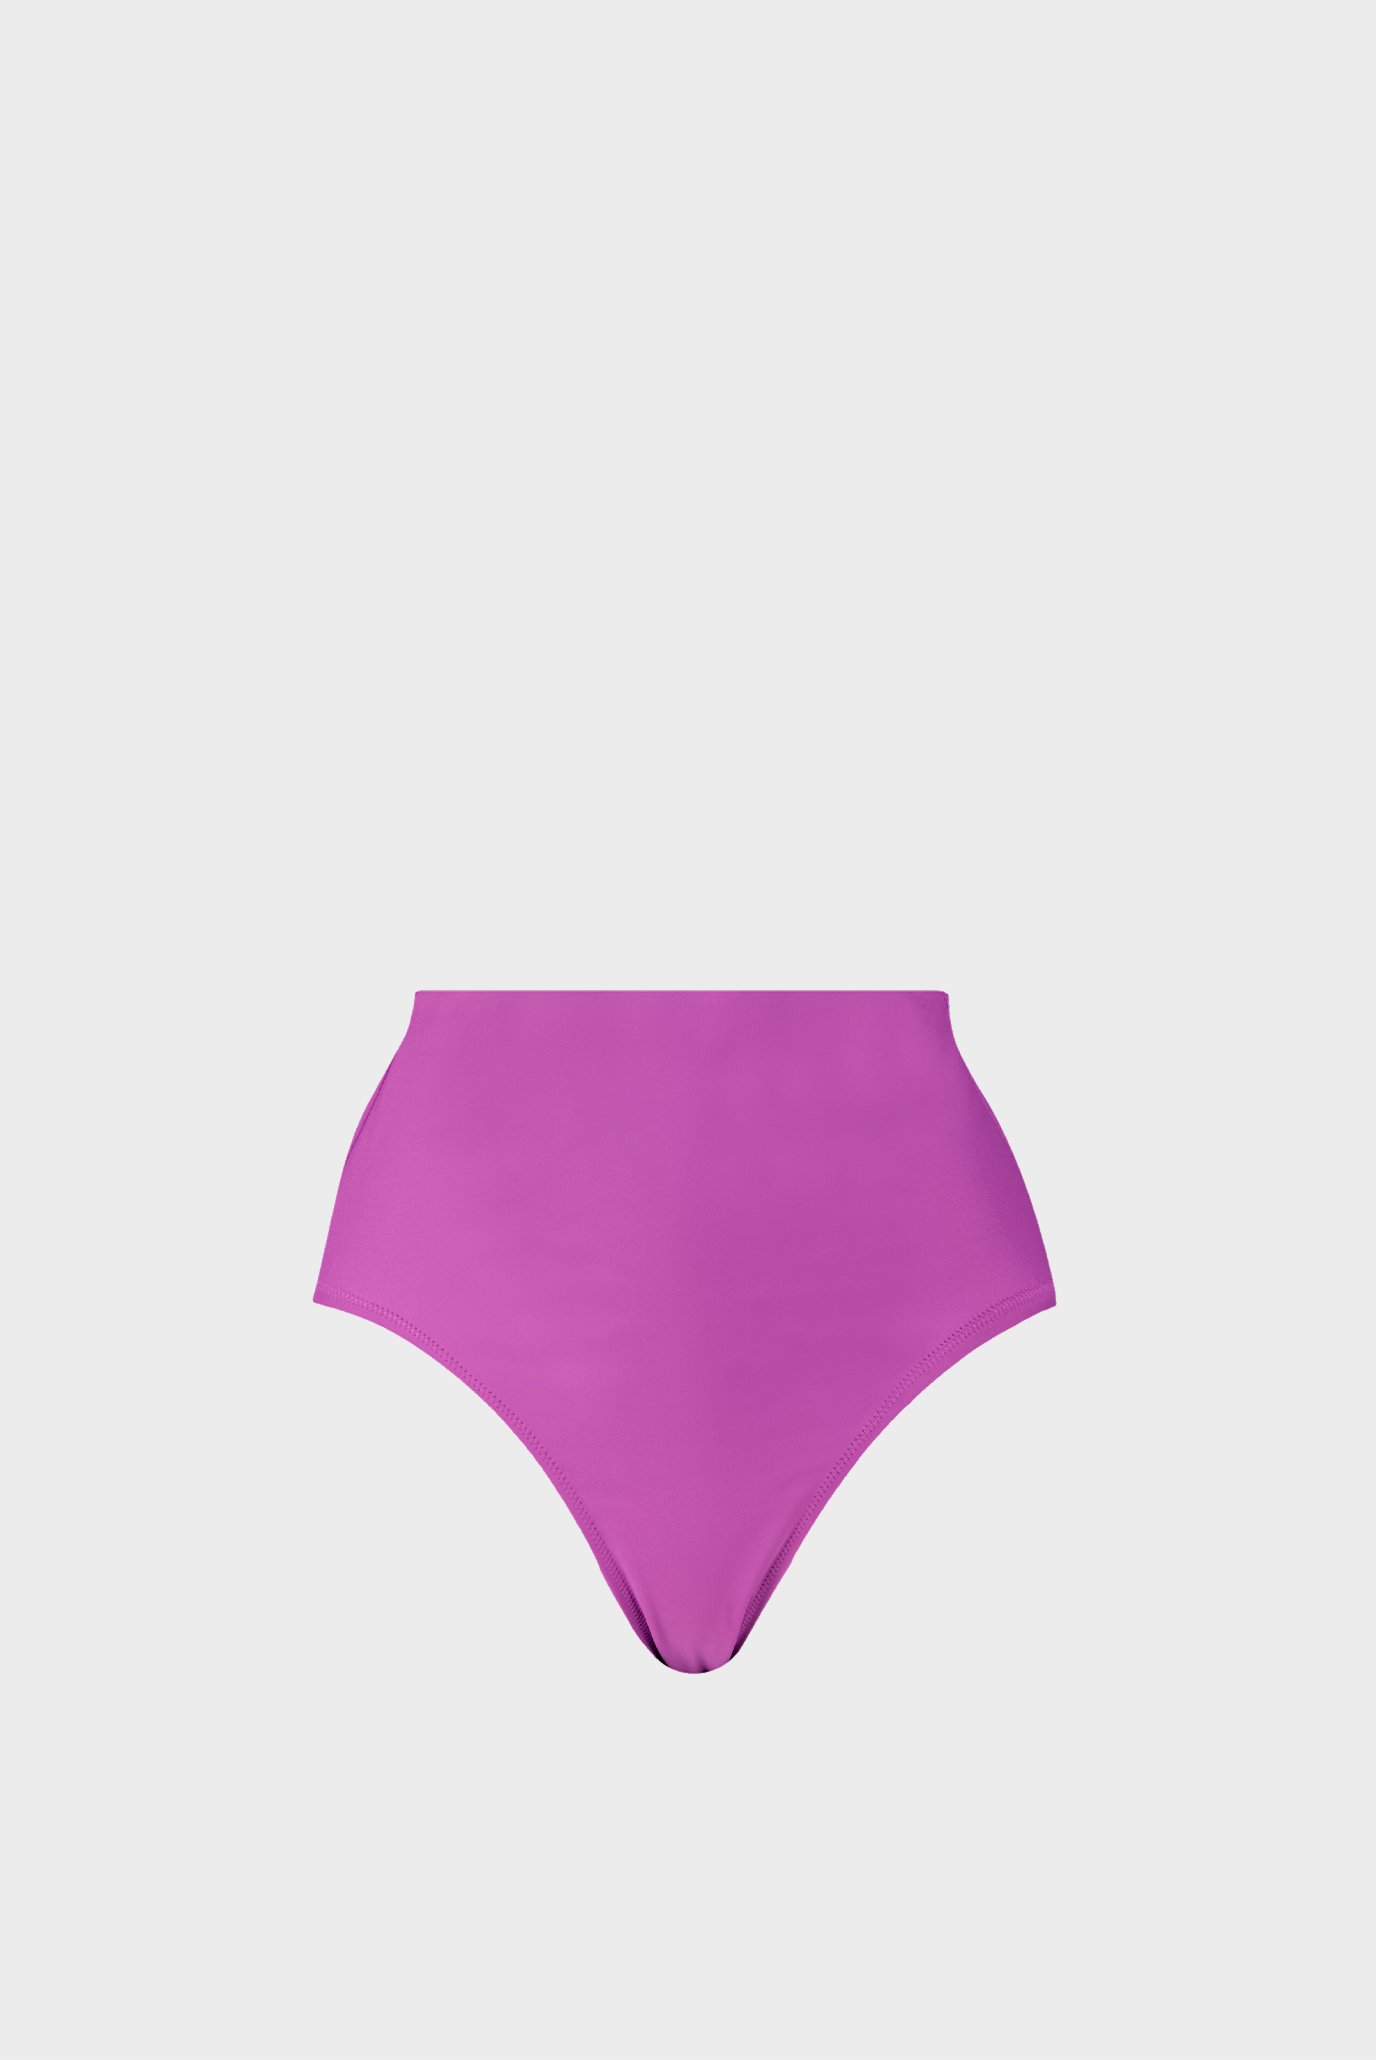 Женские фиолетовые трусики от купальника PUMA Women's Briefs 1